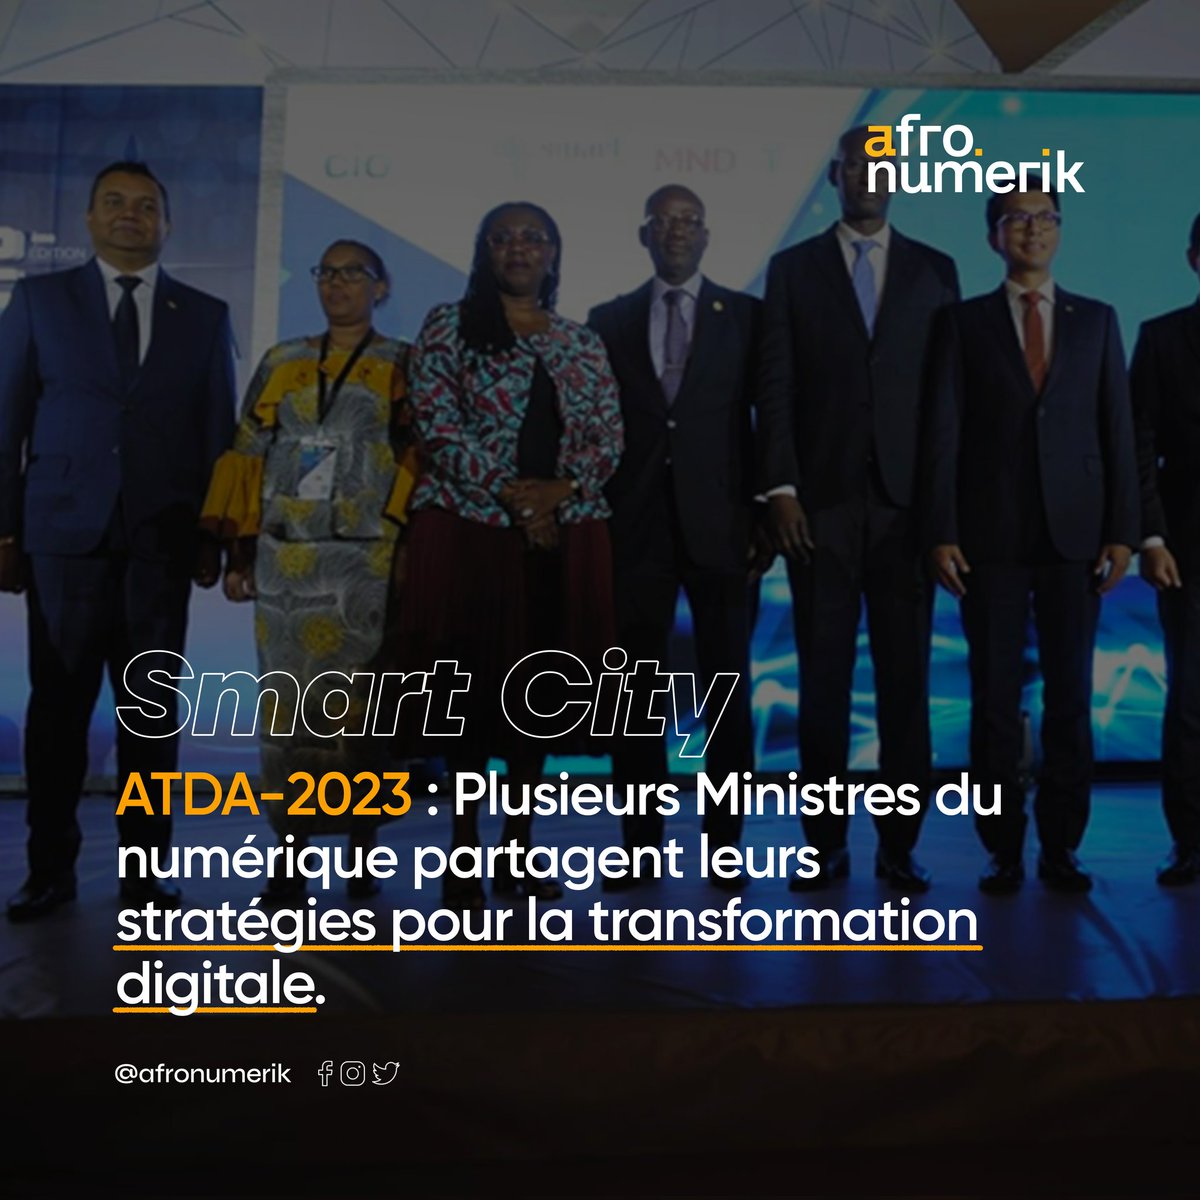 Les ministres du numérique partagent leurs stratégies pour la transformation digitale lors des ATDA-2023 à Madagascar. 
#SmartCity #TransformationDigitale #atda2023